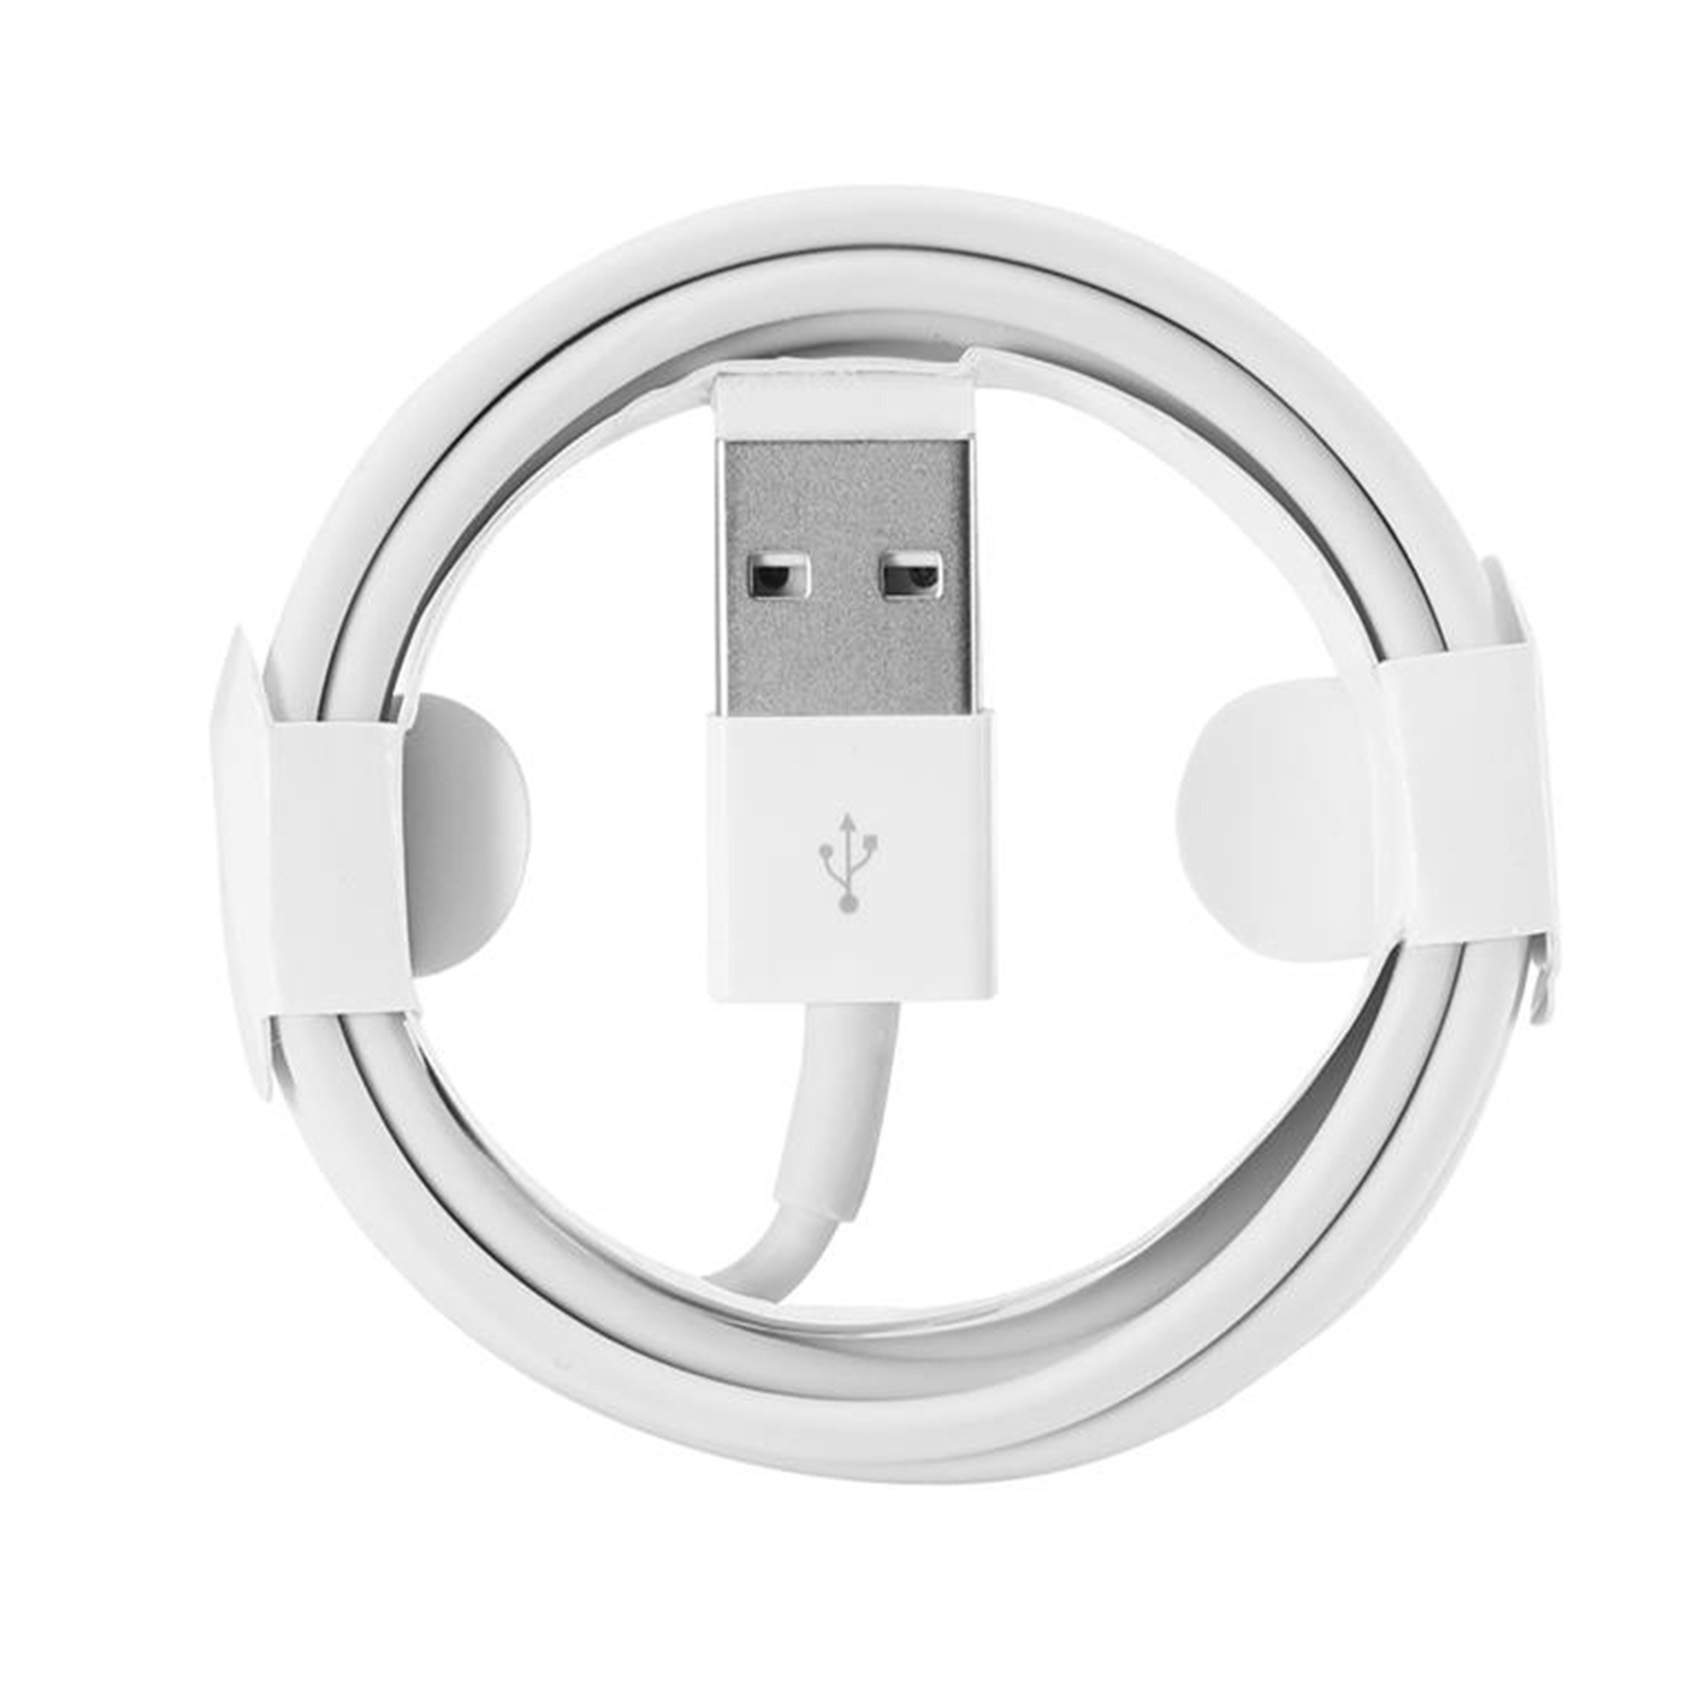 iPhone XR Lightning auf USB Kabel 1m Ladekabel